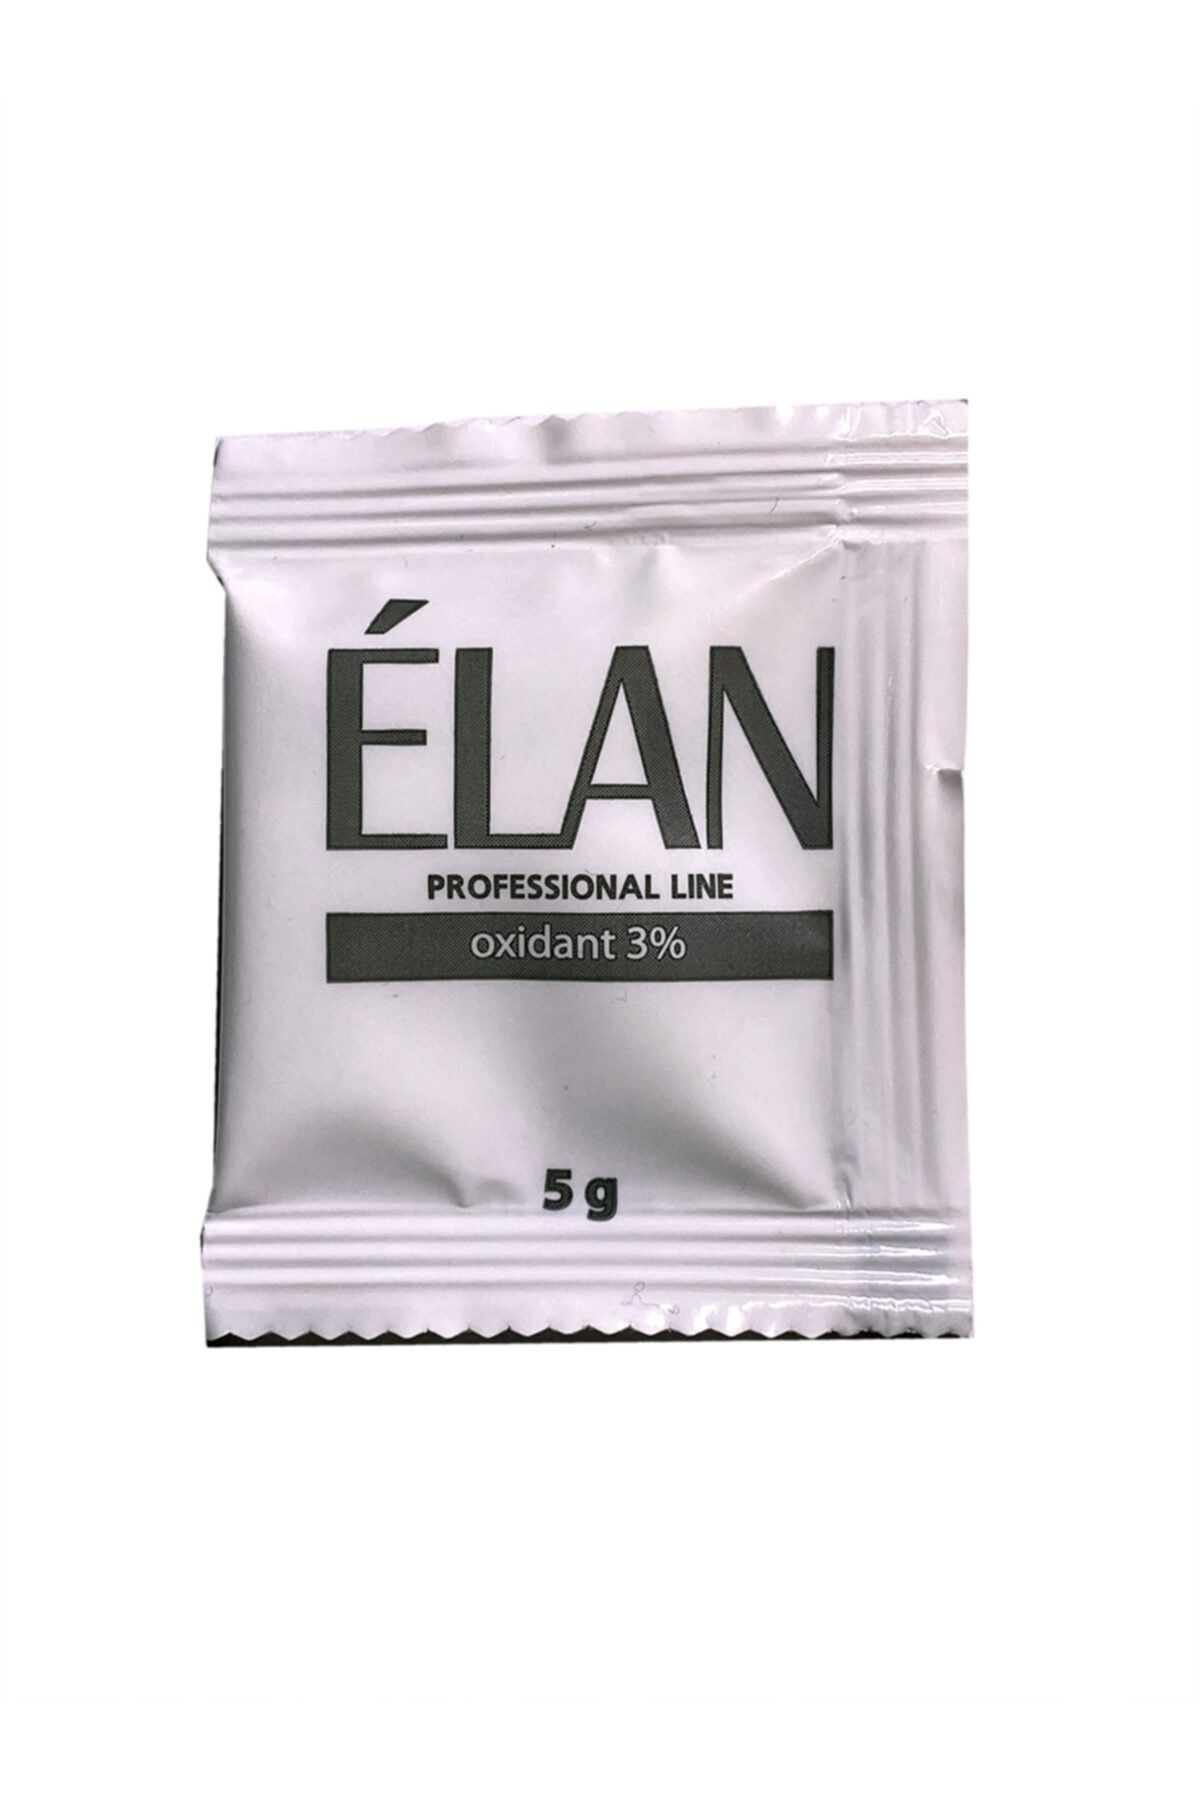 Elan / Oxidant %3 - Kaş Kirpik Boyası Oksidanı %3 - Şase Şeklinde 5g